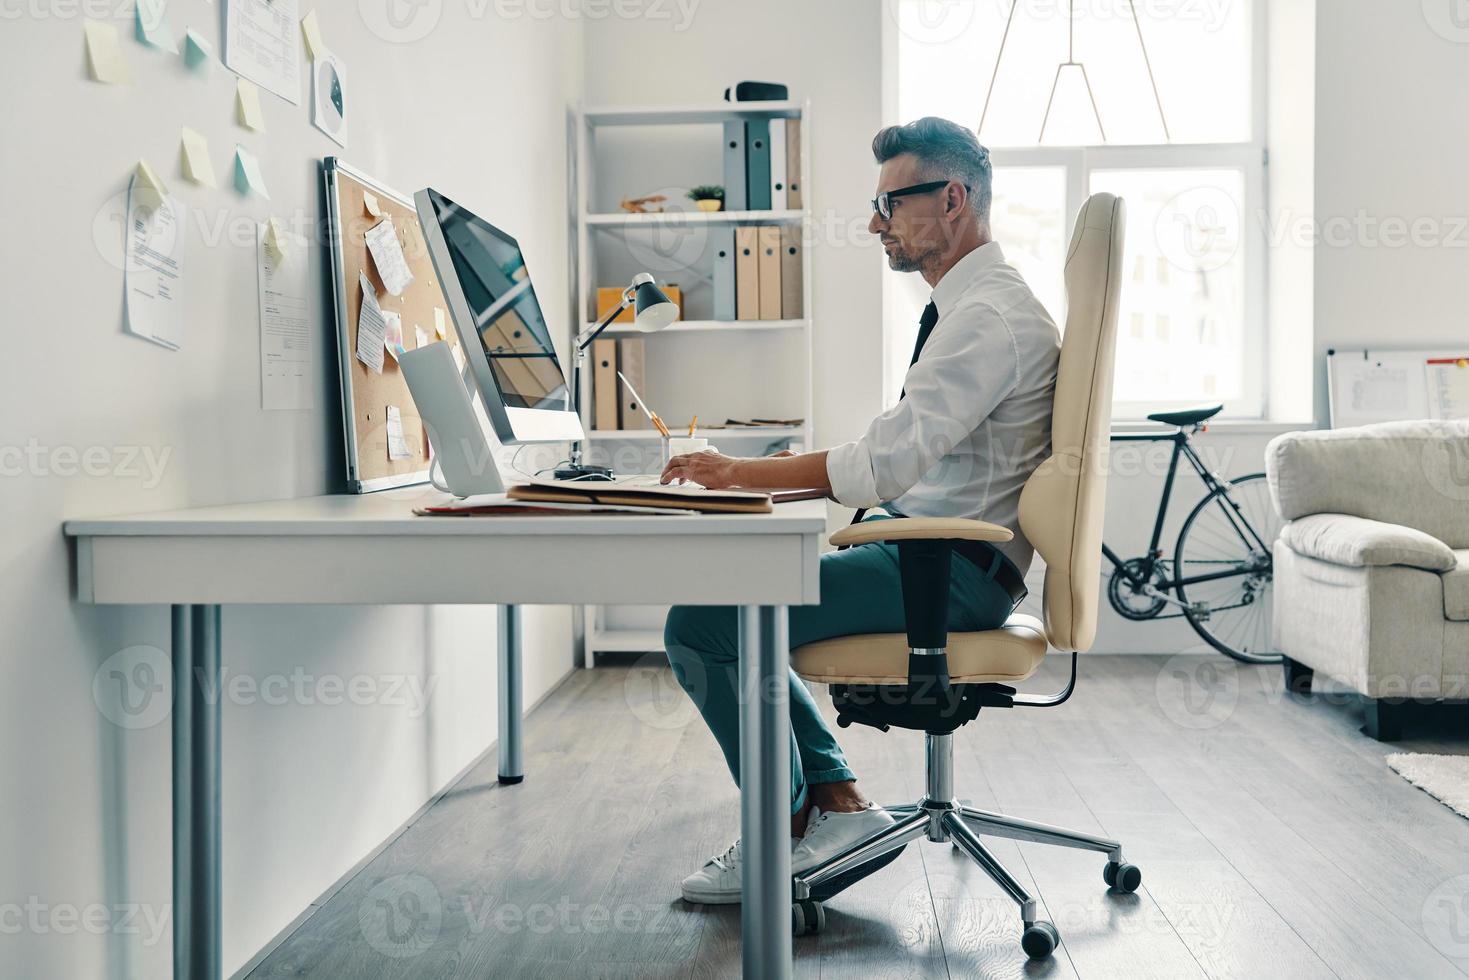 les affaires sont sa vie. jeune homme réfléchi en chemise et cravate travaillant à l'aide d'un ordinateur assis au bureau photo